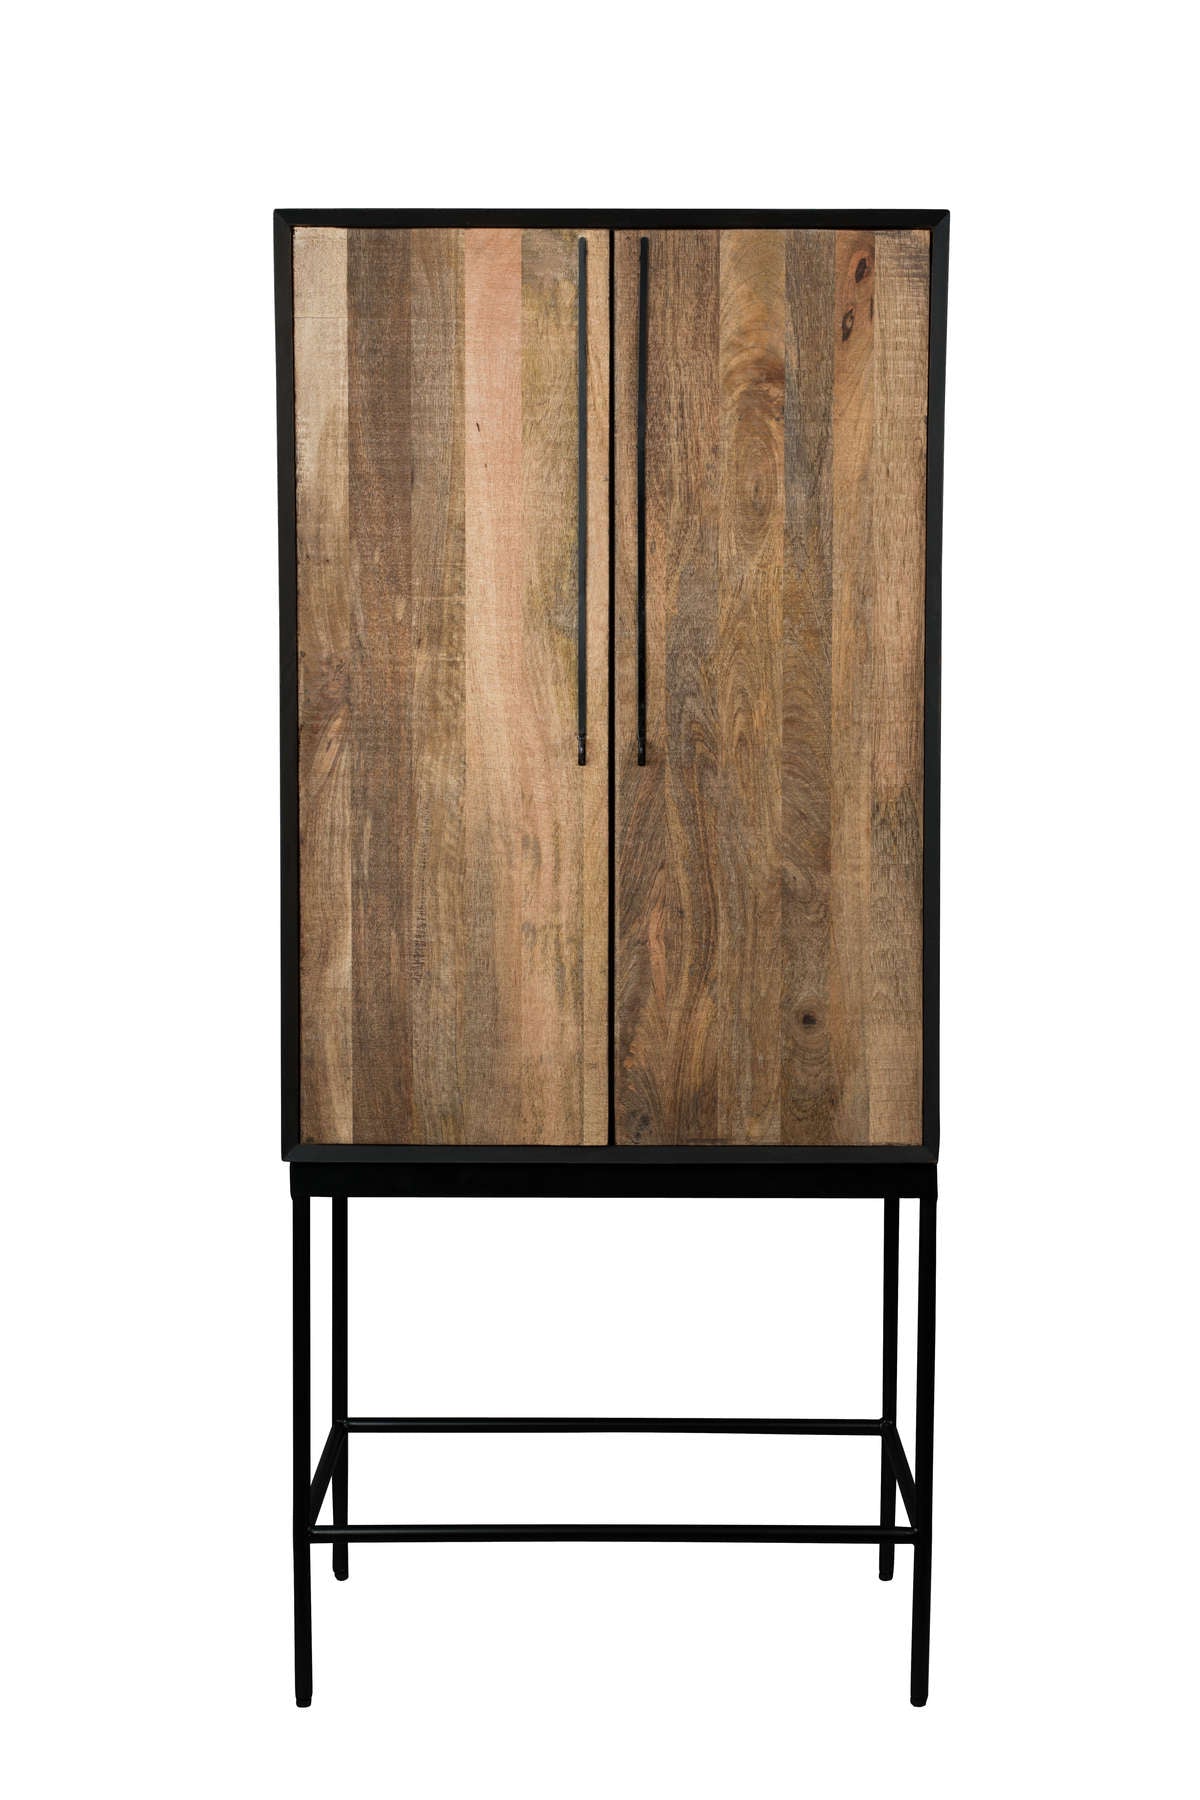 Designer dressers for living - bedroom room. Functional cabinets Design Eye on for